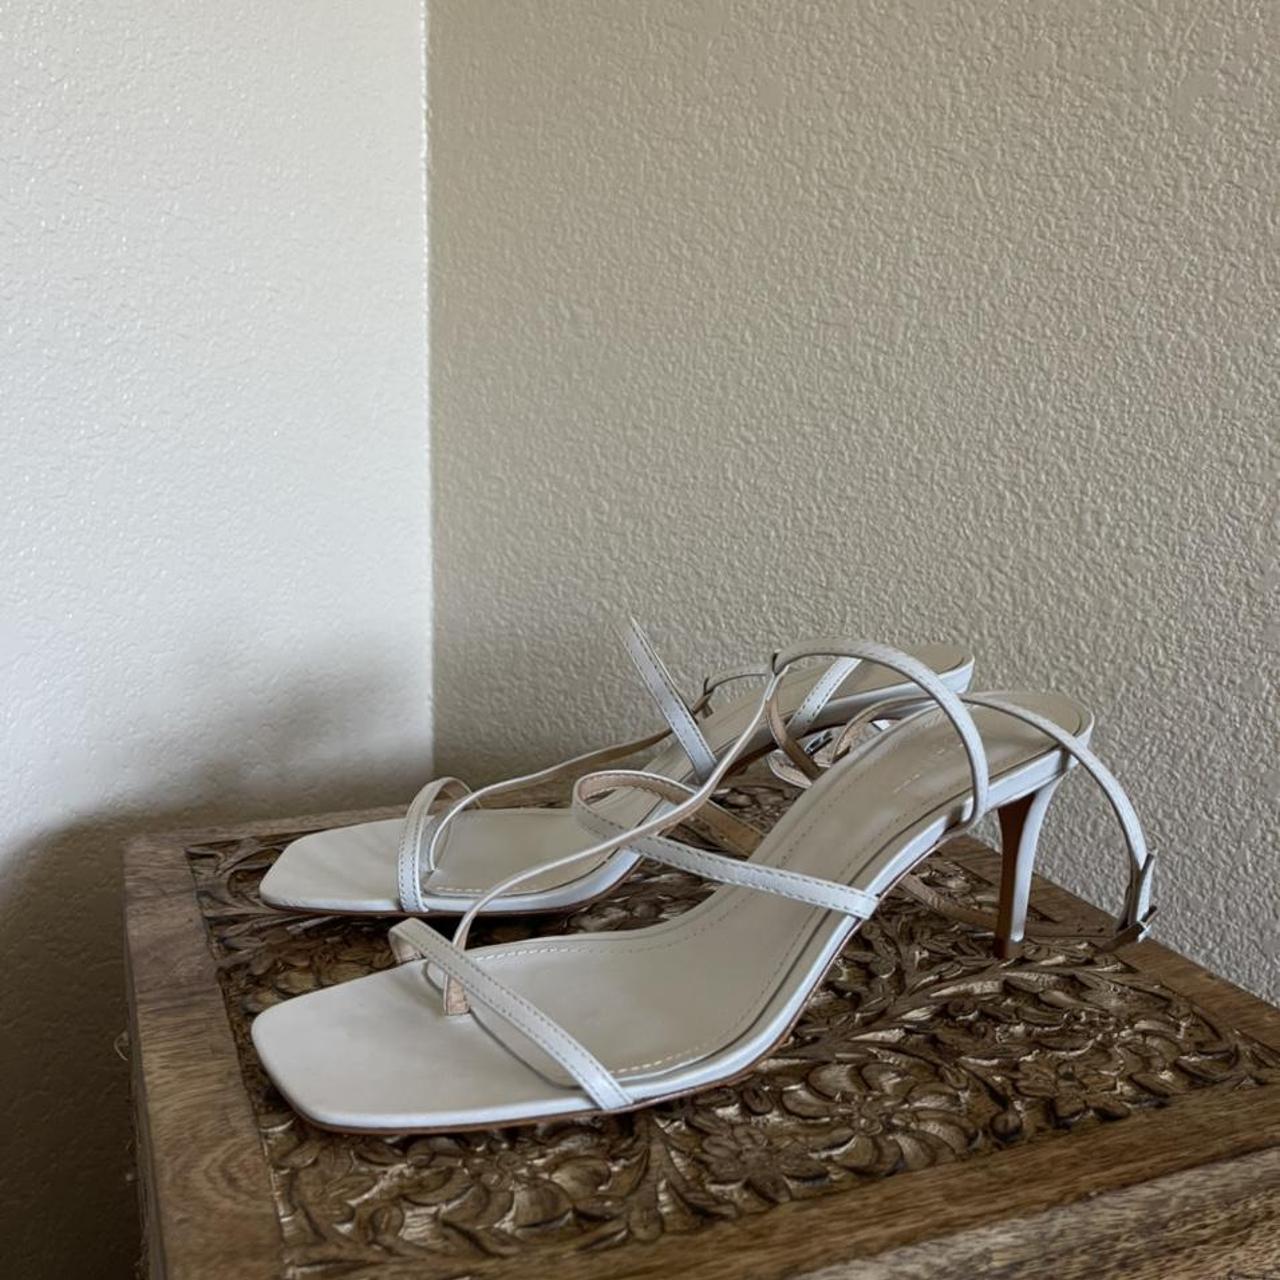 Schutz Women's White Sandals